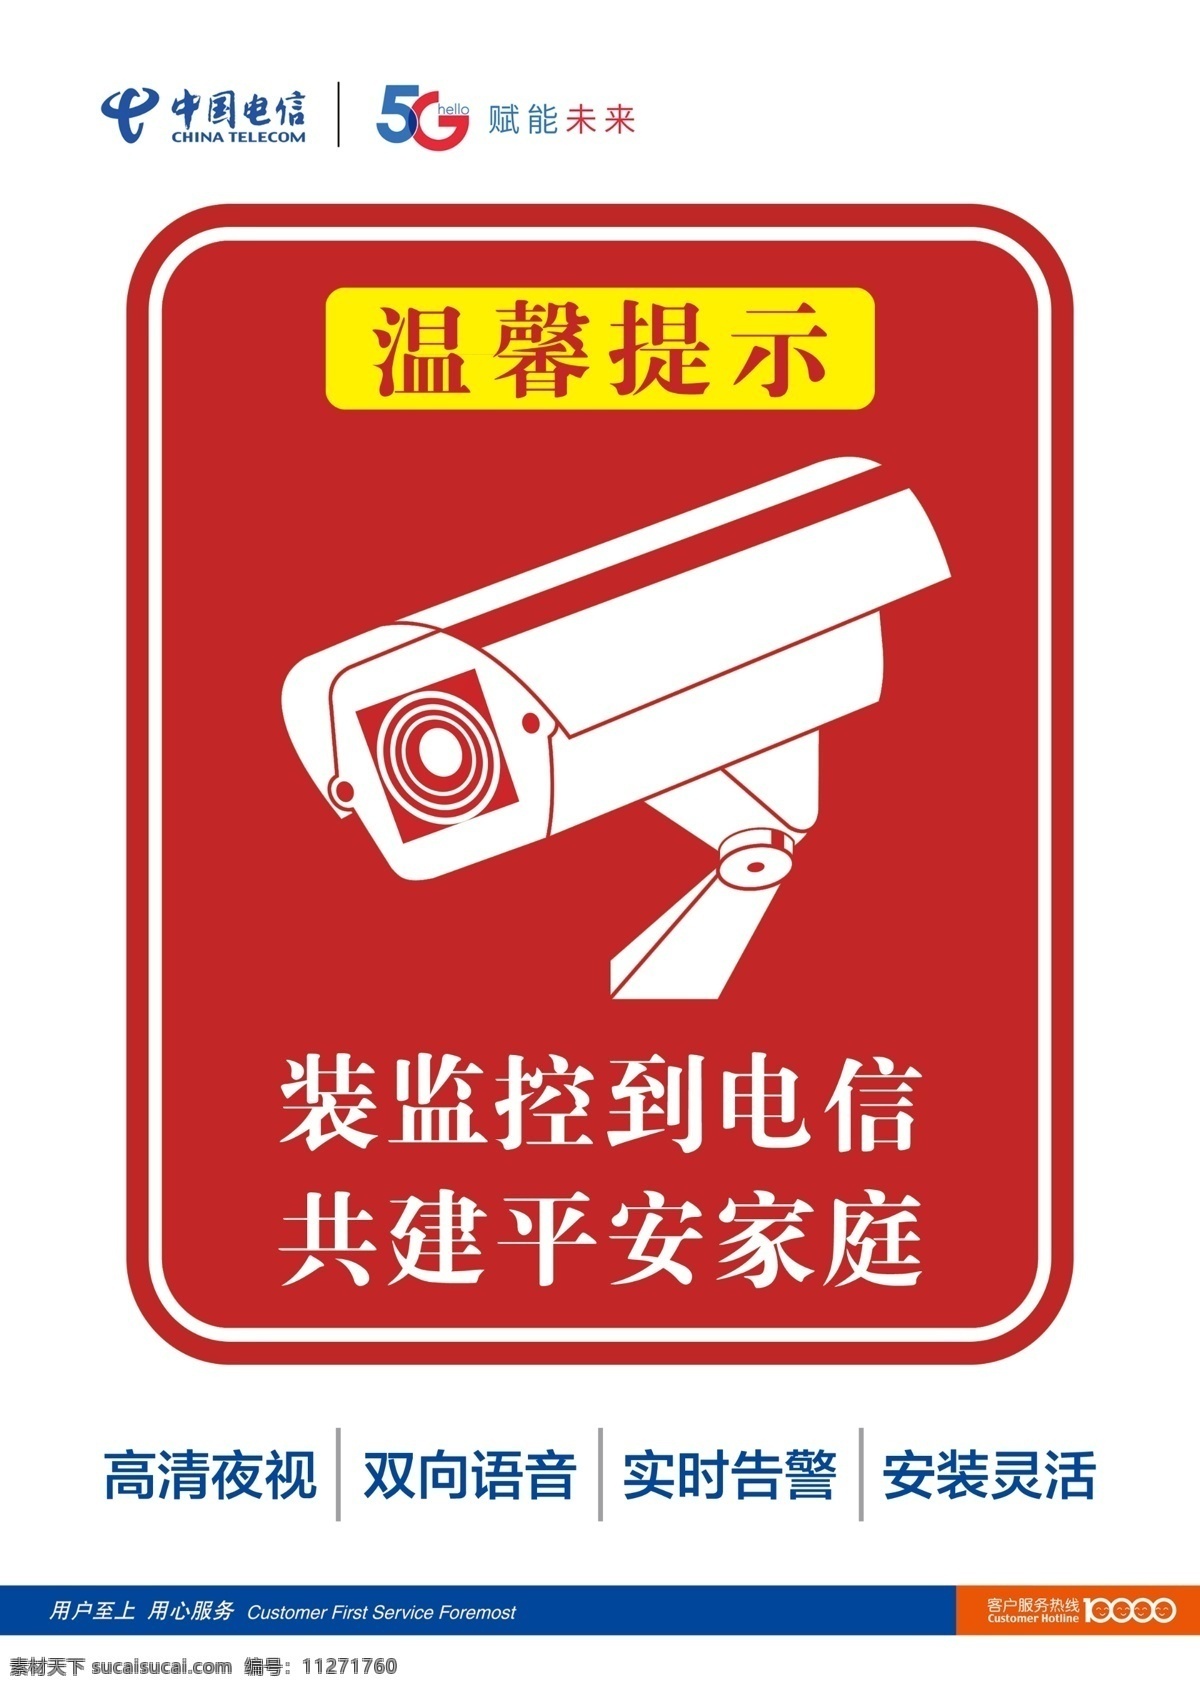 中国电信 视频监控 电信 视频 摄像头 监控 5g